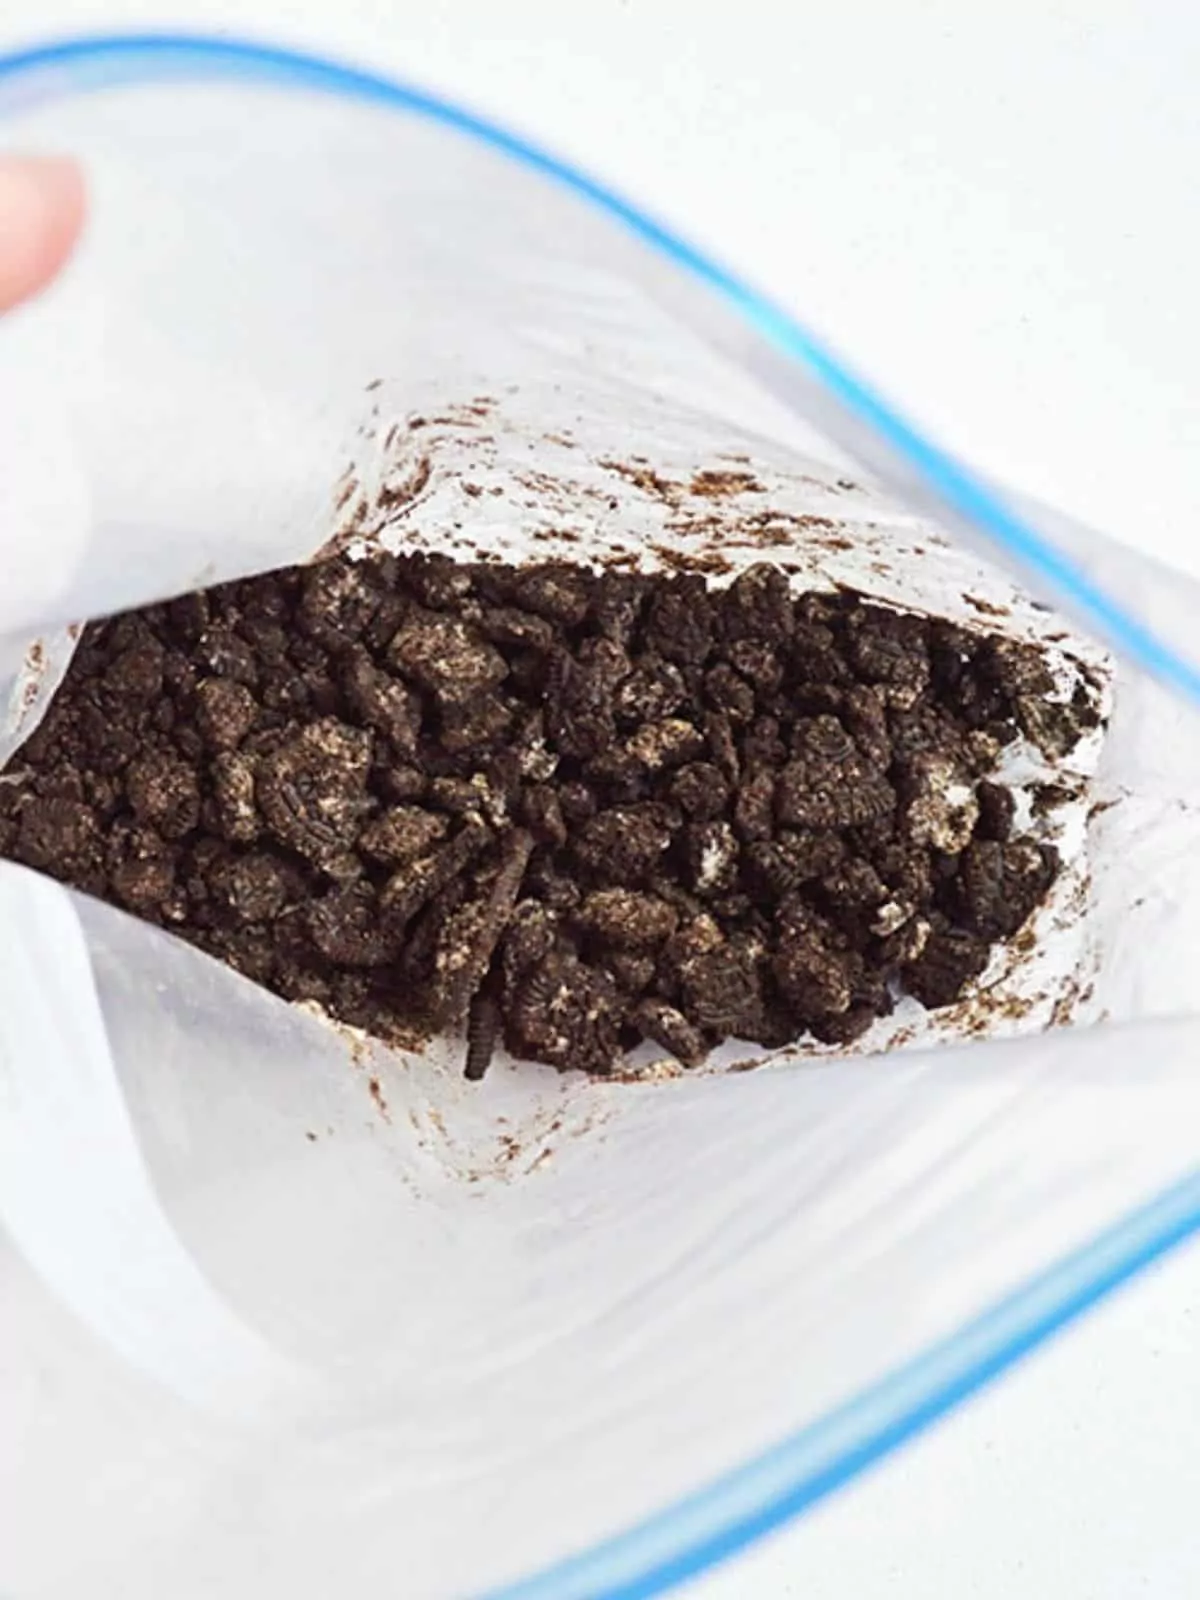 Crushed Oreo cookies in plastic food storage bag.